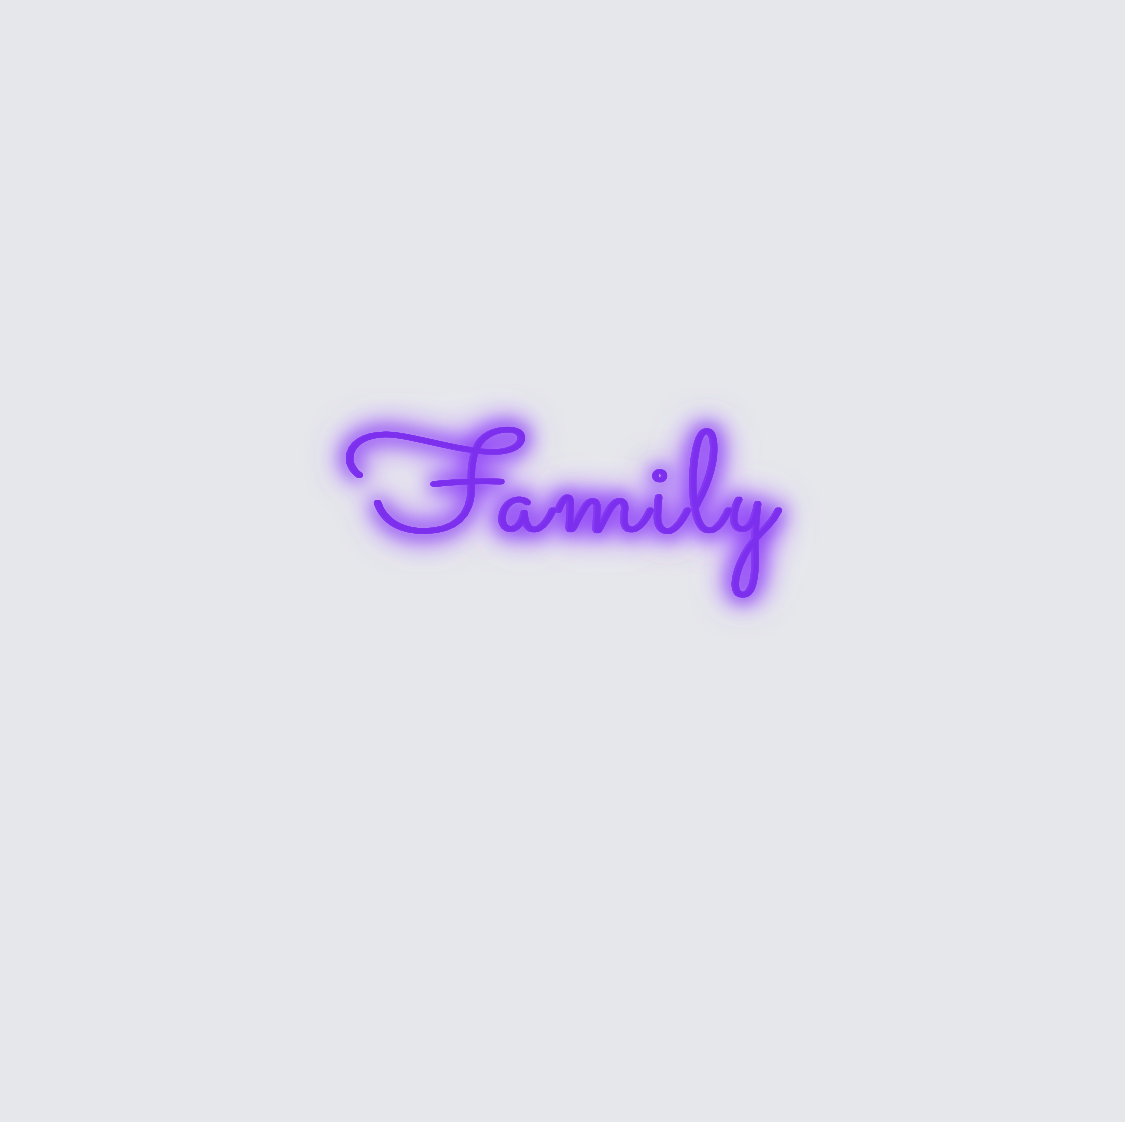 Custom neon sign - Family